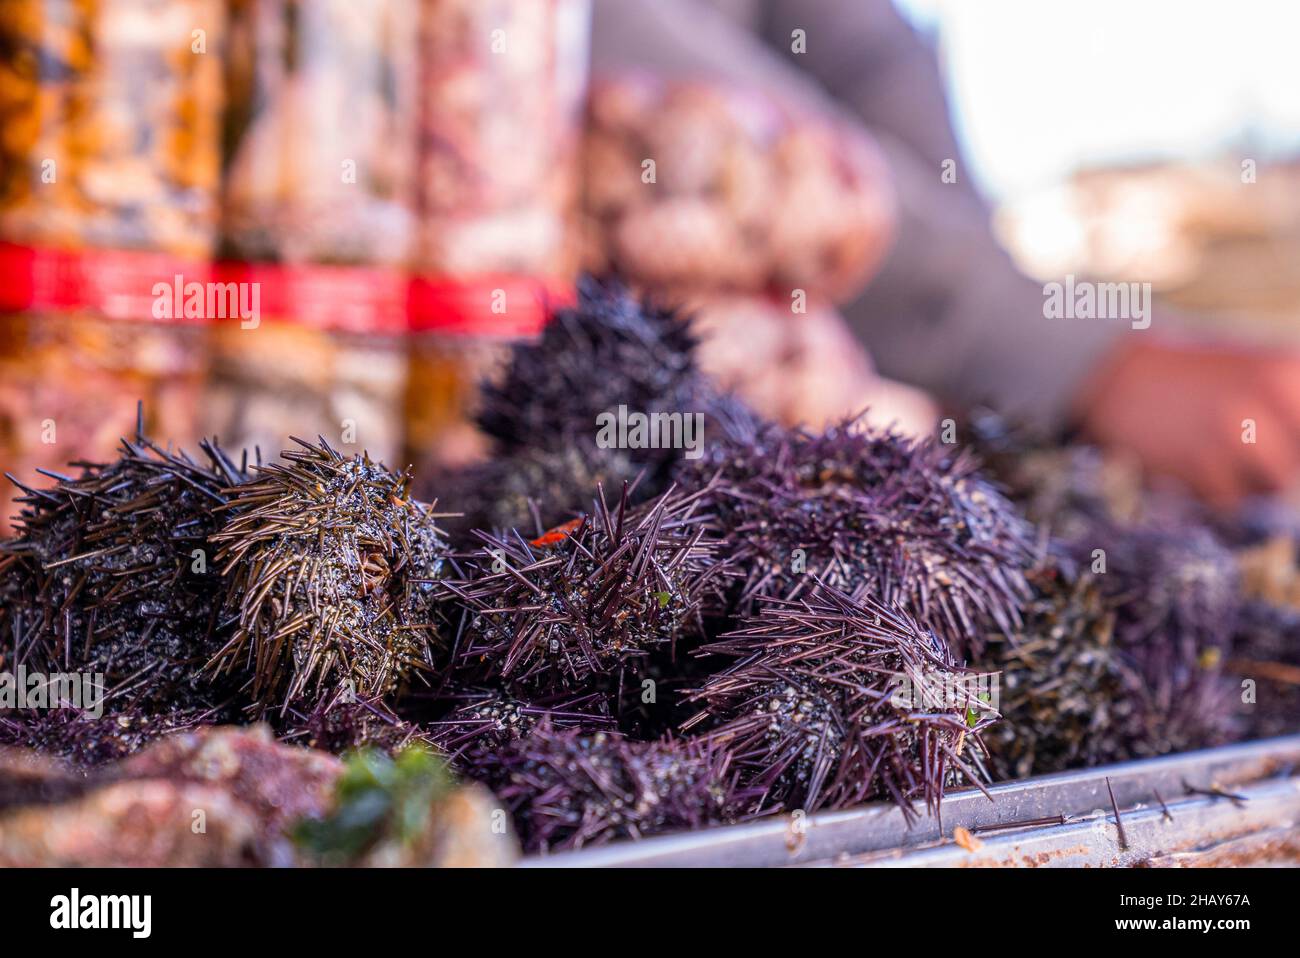 Nahaufnahme von rohen frischen Purpurseeigeln auf dem Tisch auf dem Fischmarkt Stockfoto